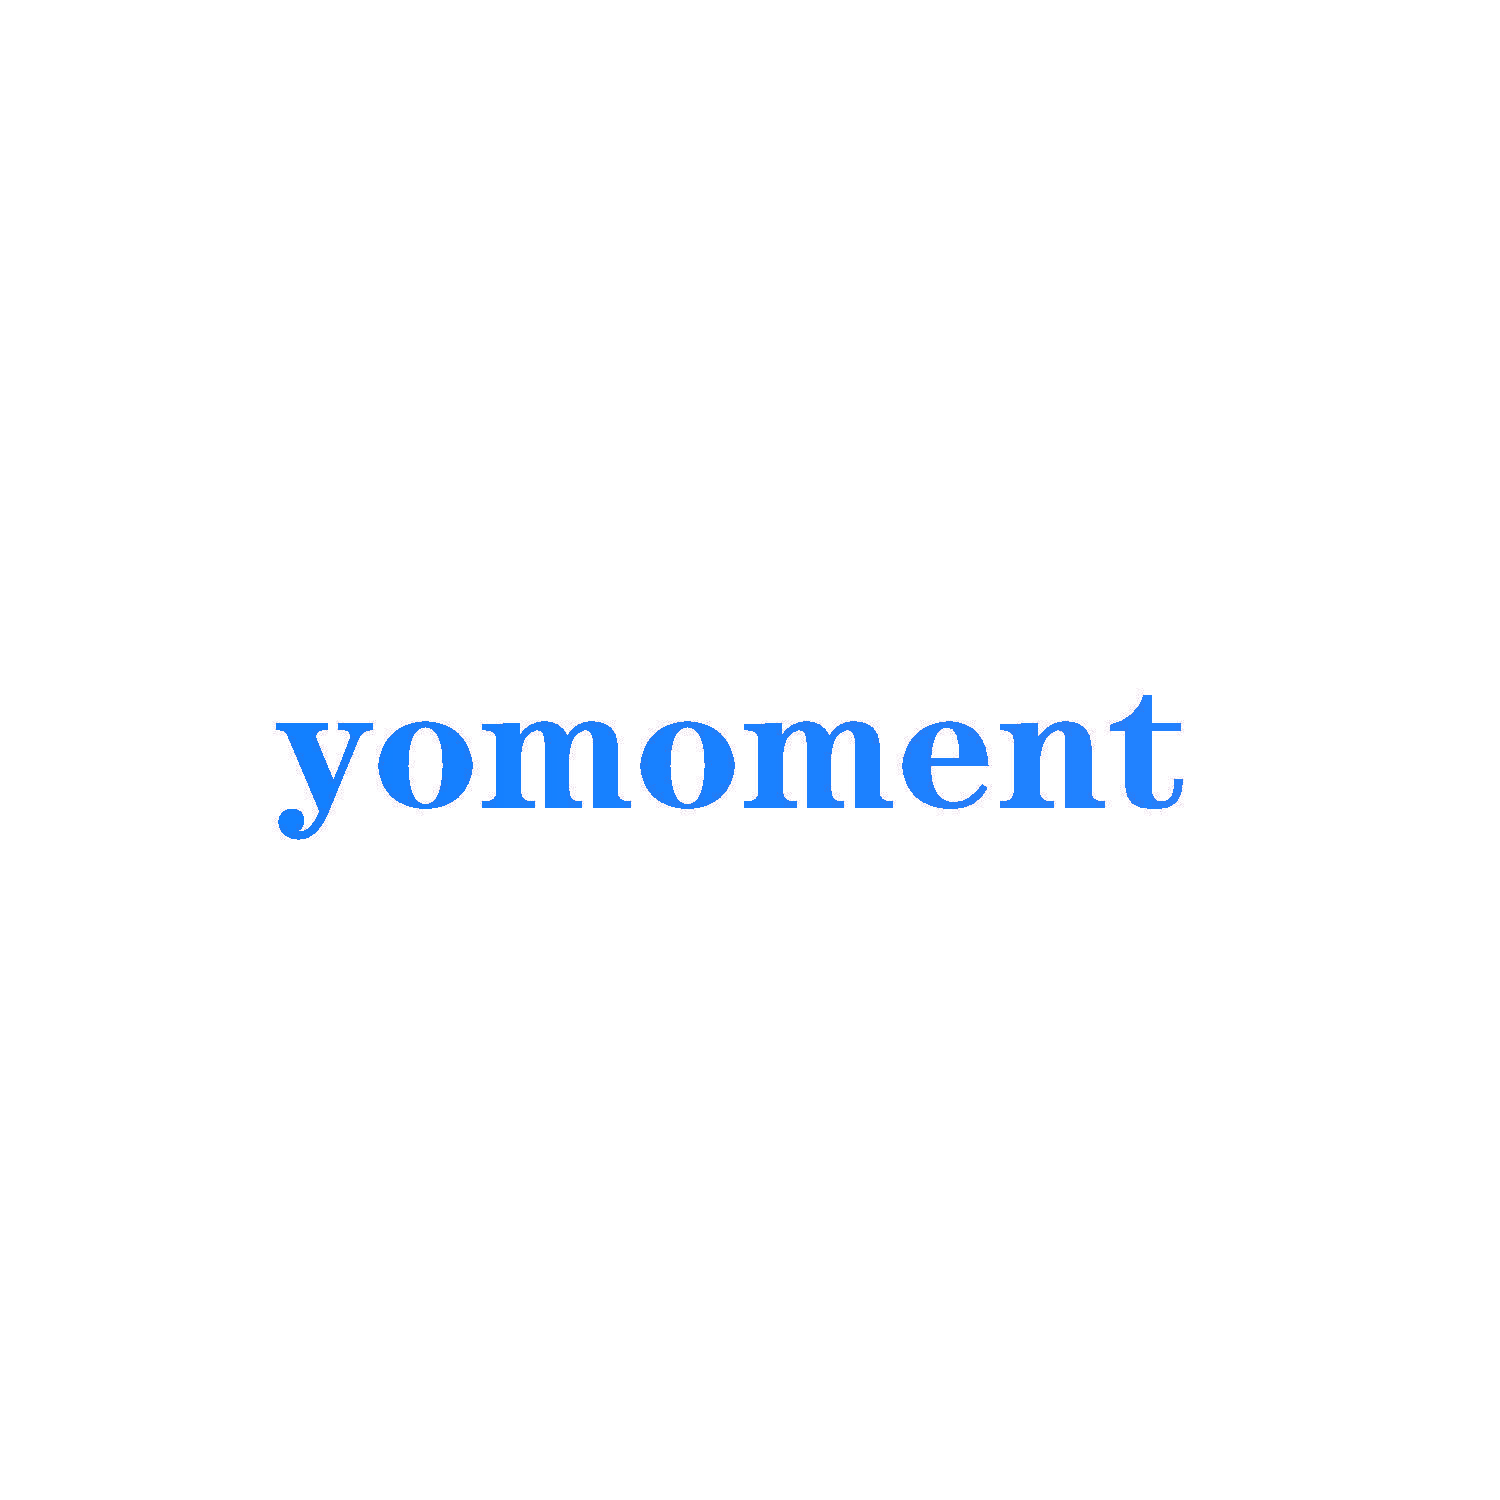 yomoment